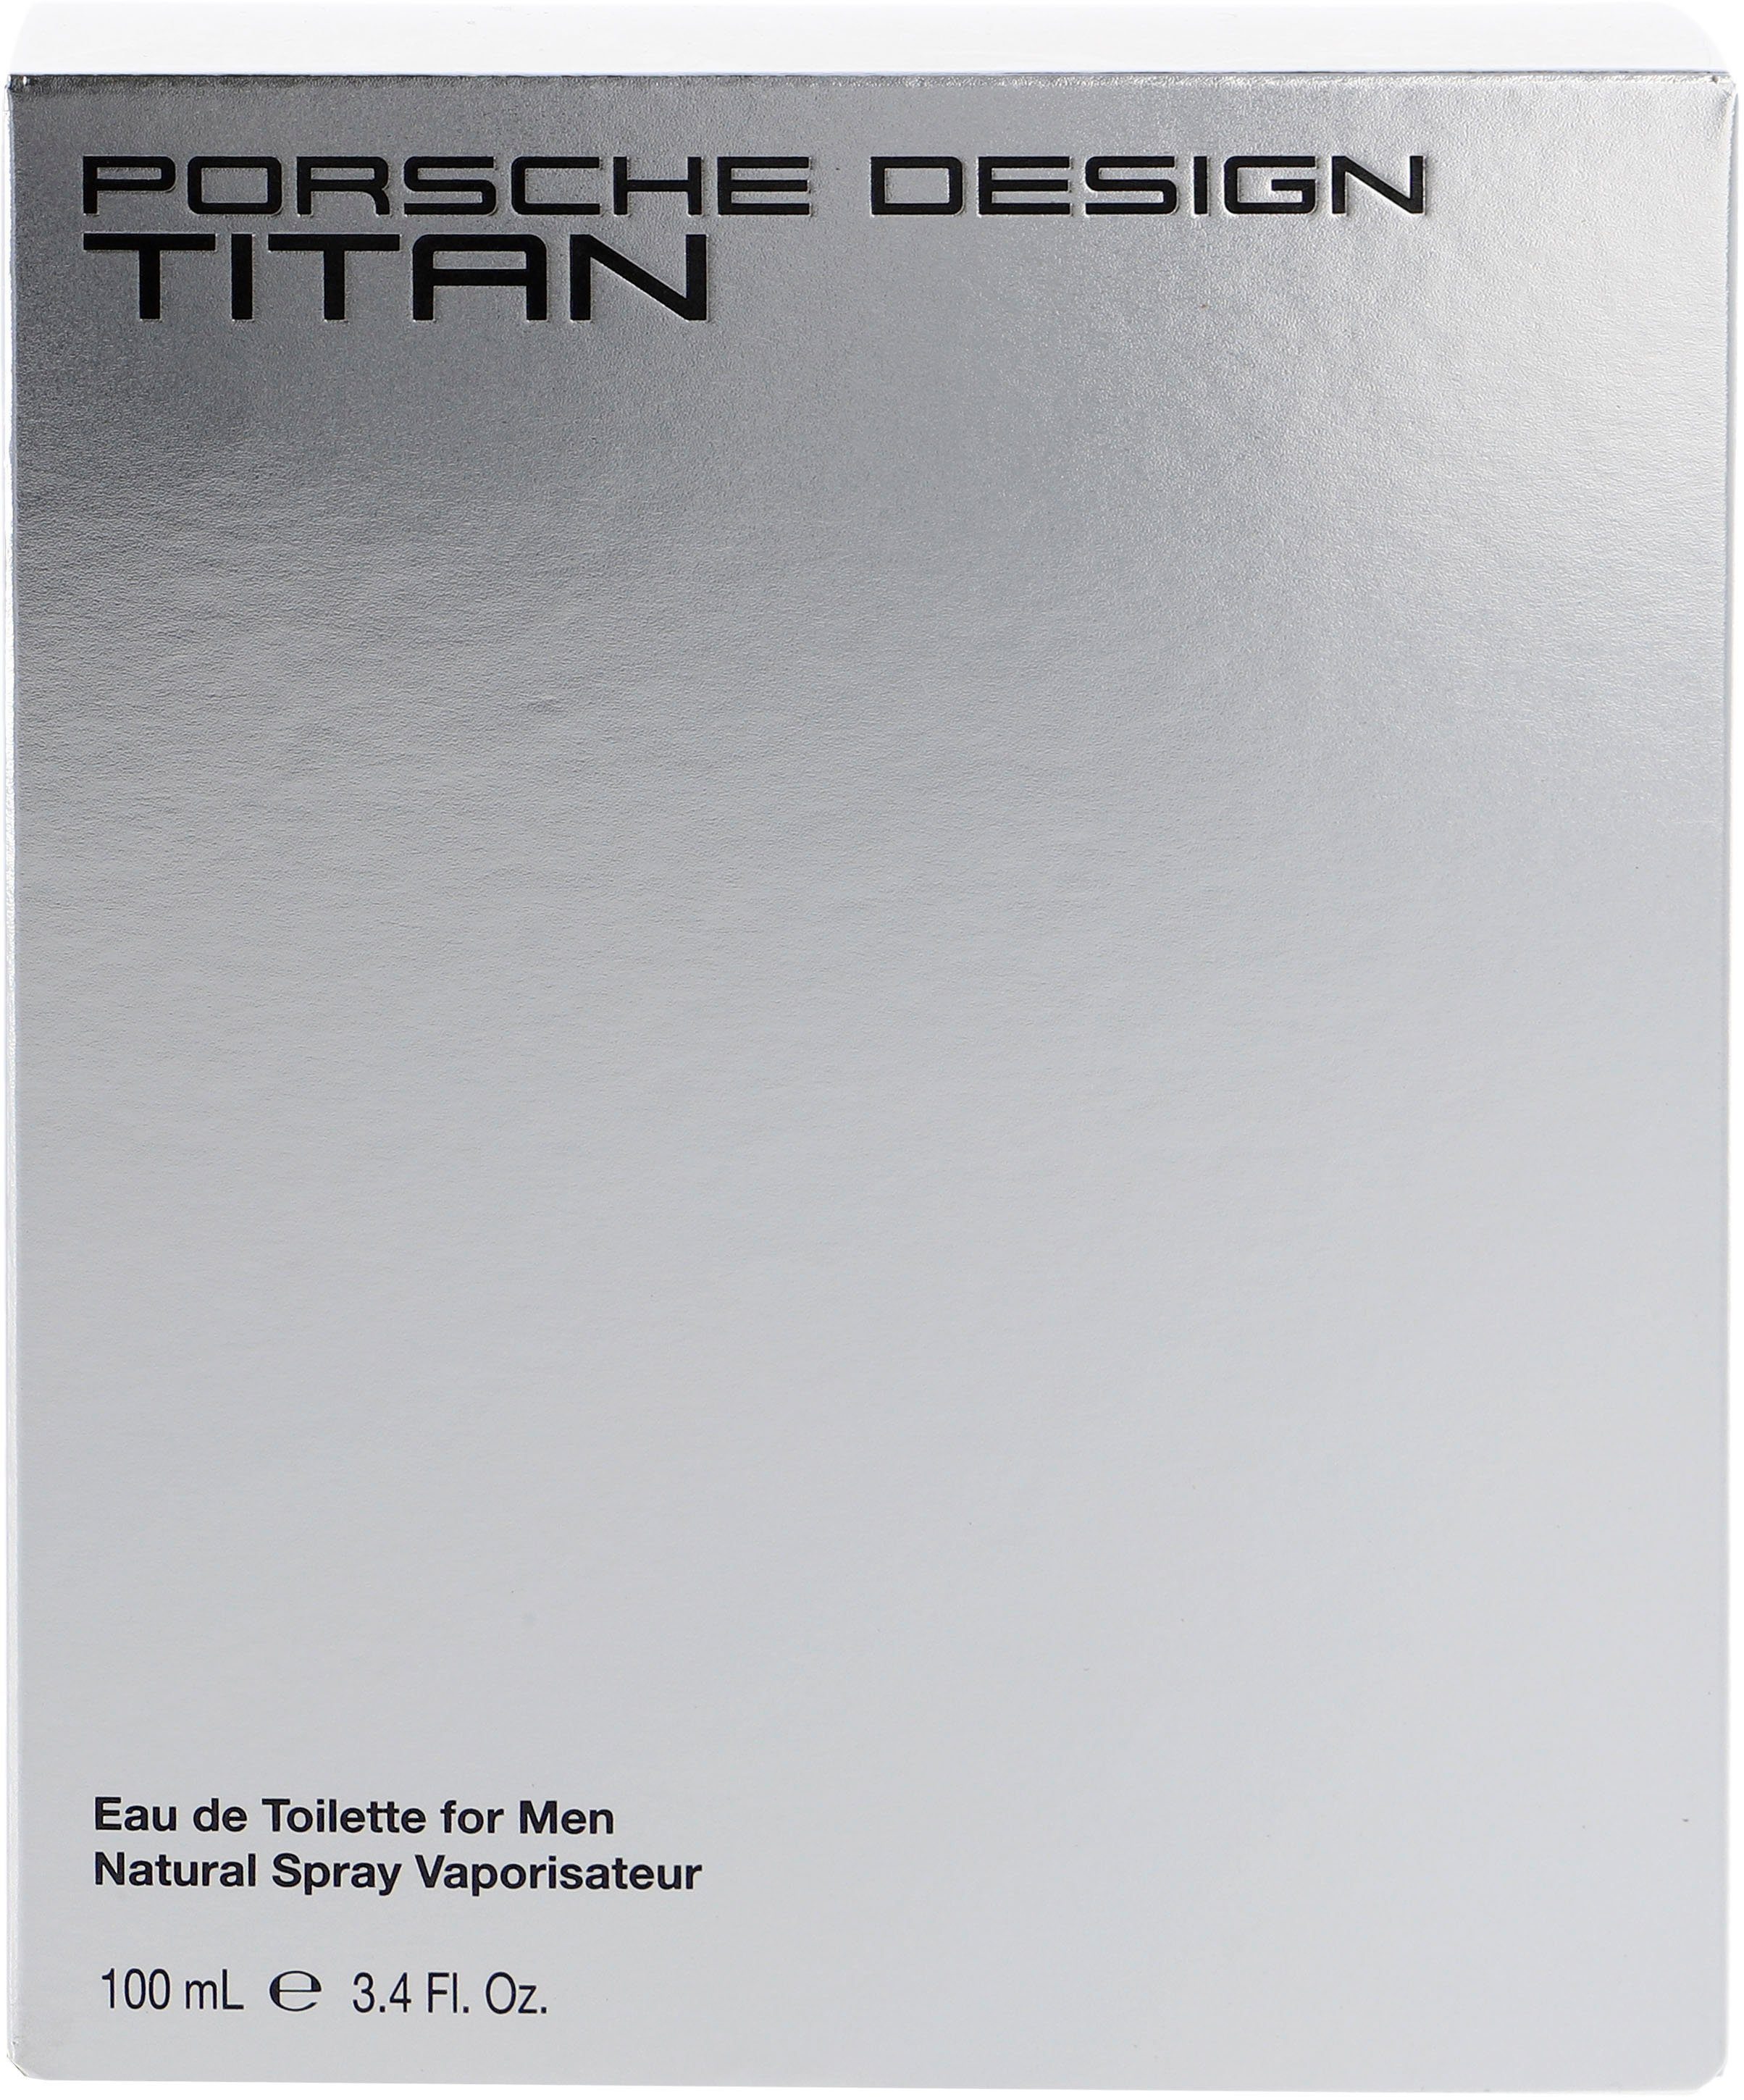 Design de Titan Toilette PORSCHE Eau